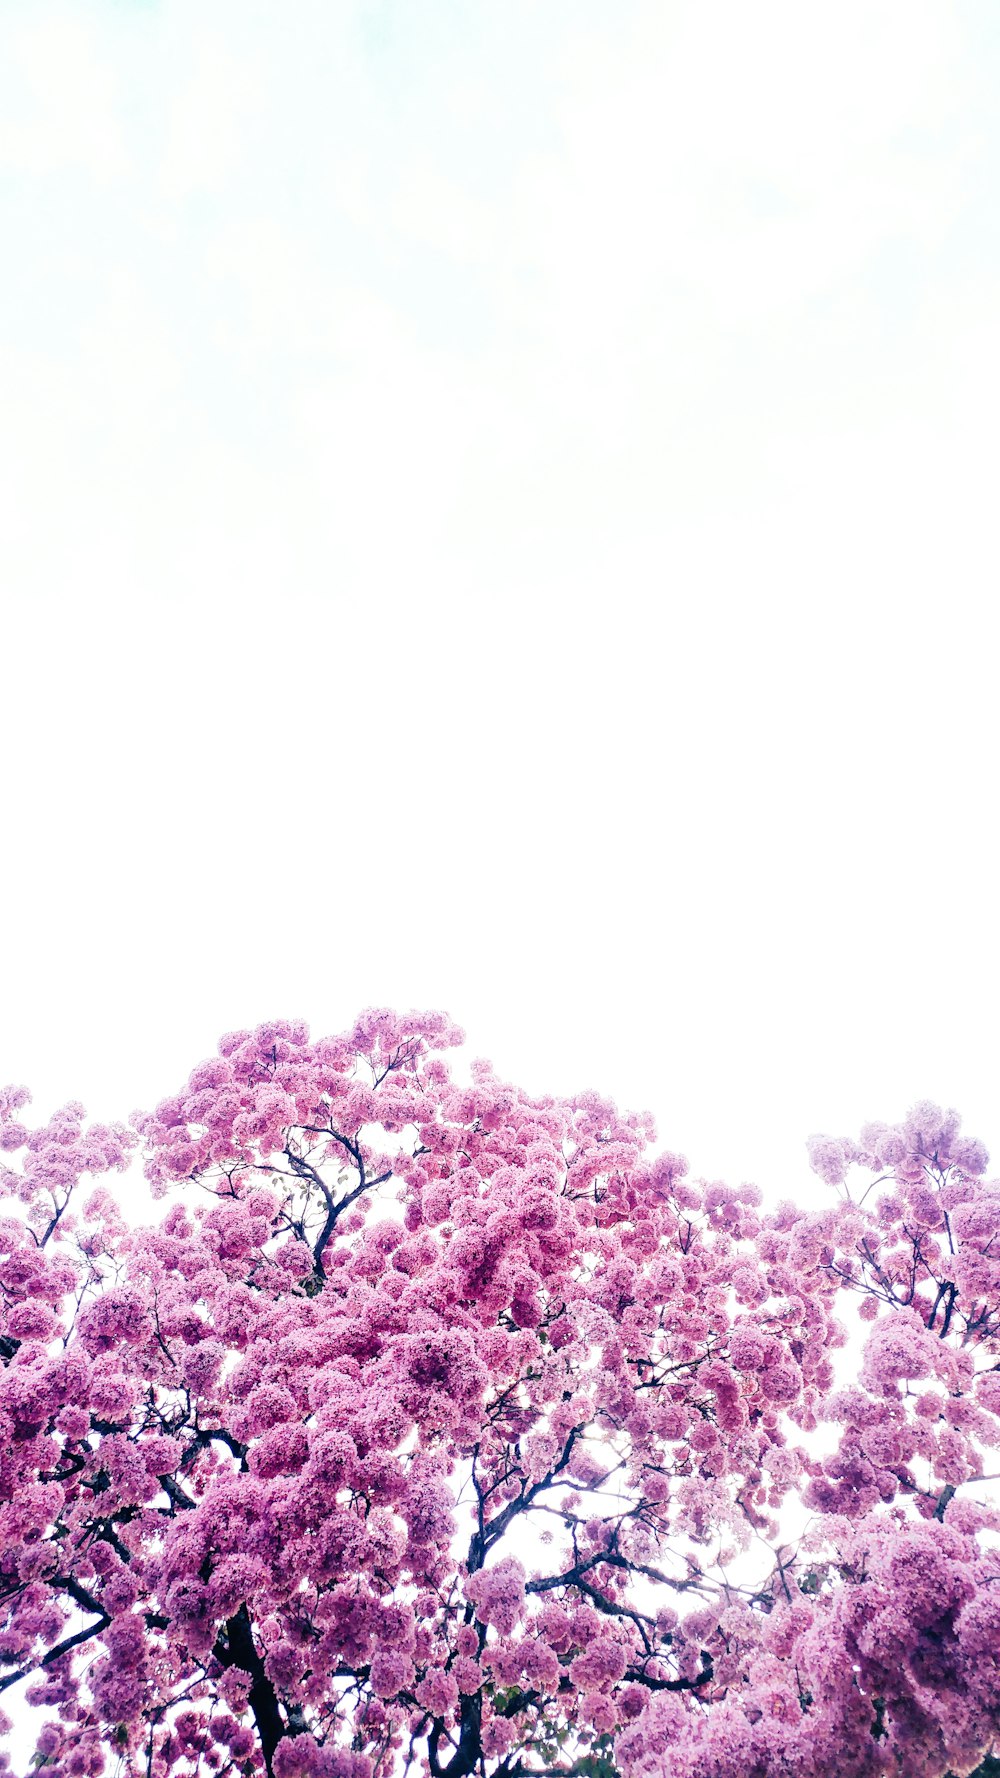 Bäume mit rosa Blättern